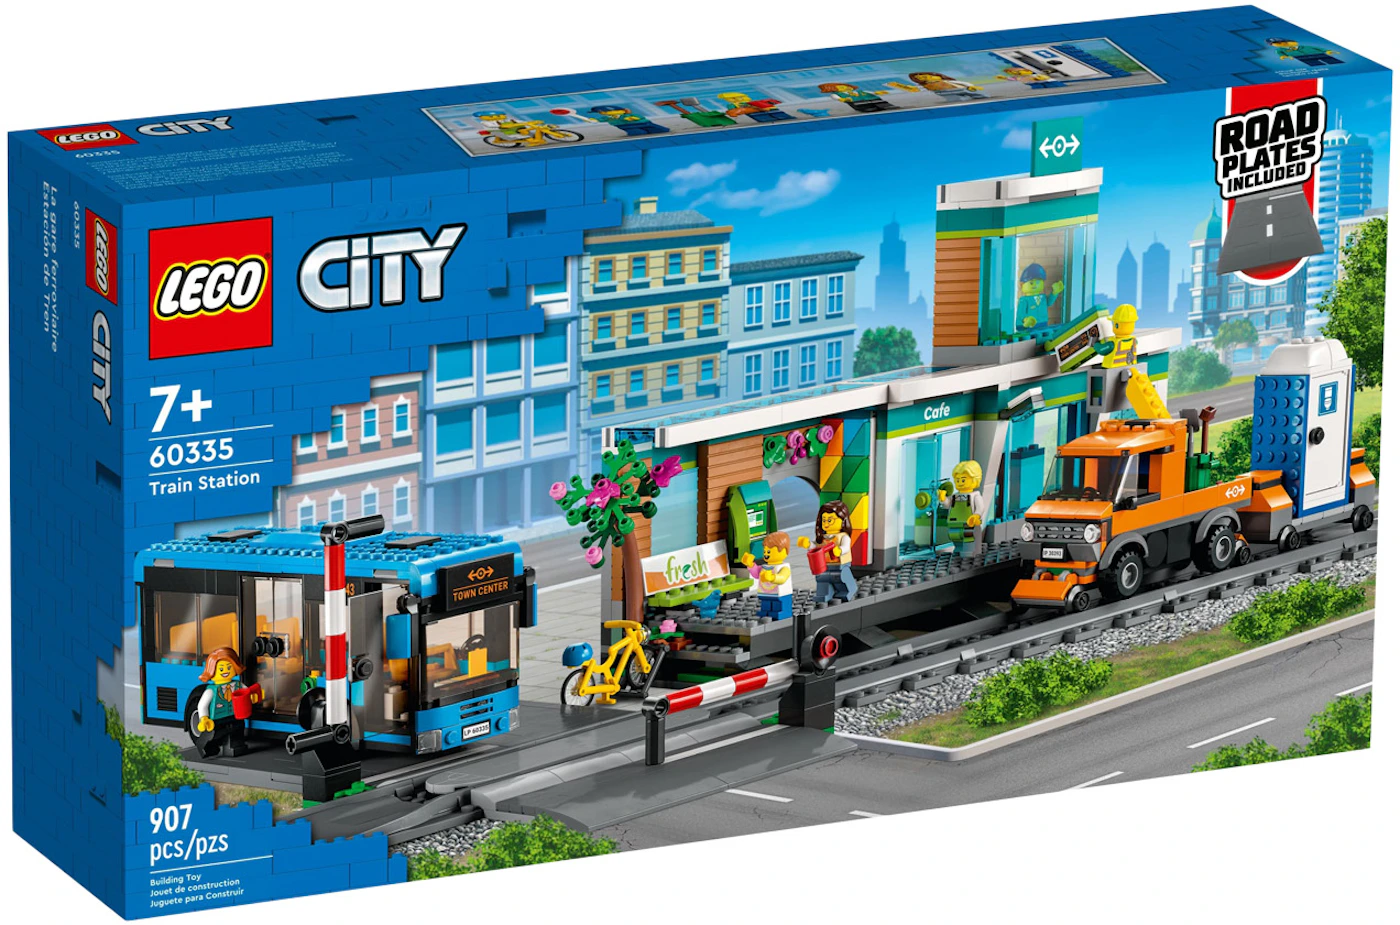 LEGO City Train Station Set 60335 - US